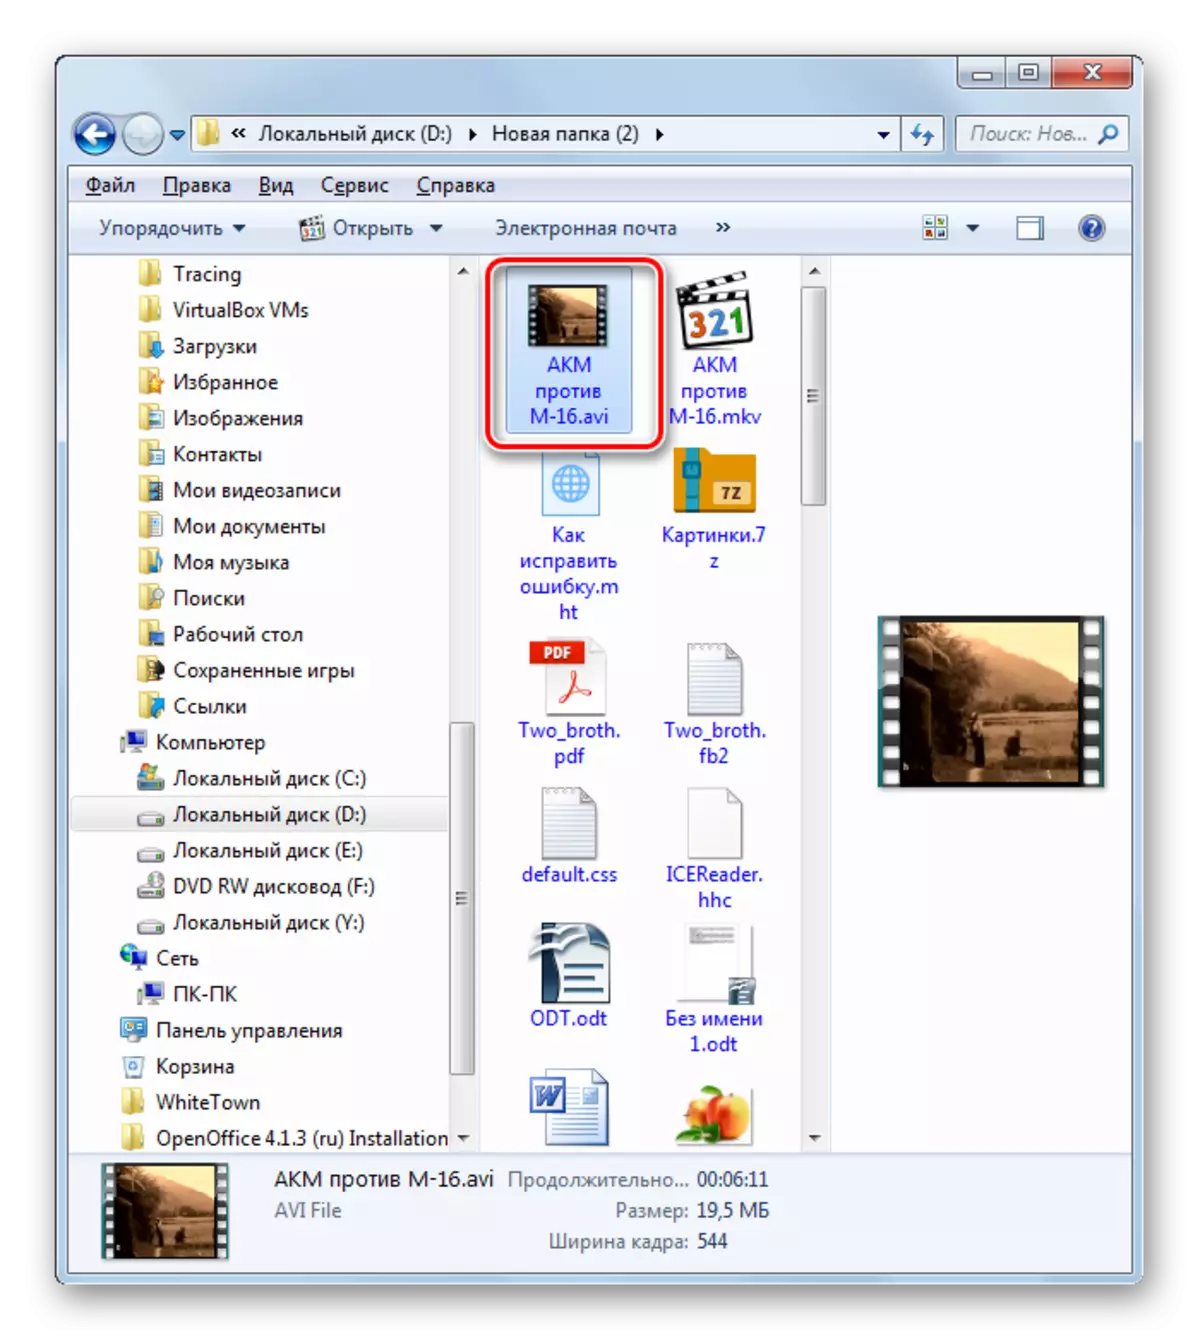 Windows Explorer-da o'zgartirilgan AVI videoni